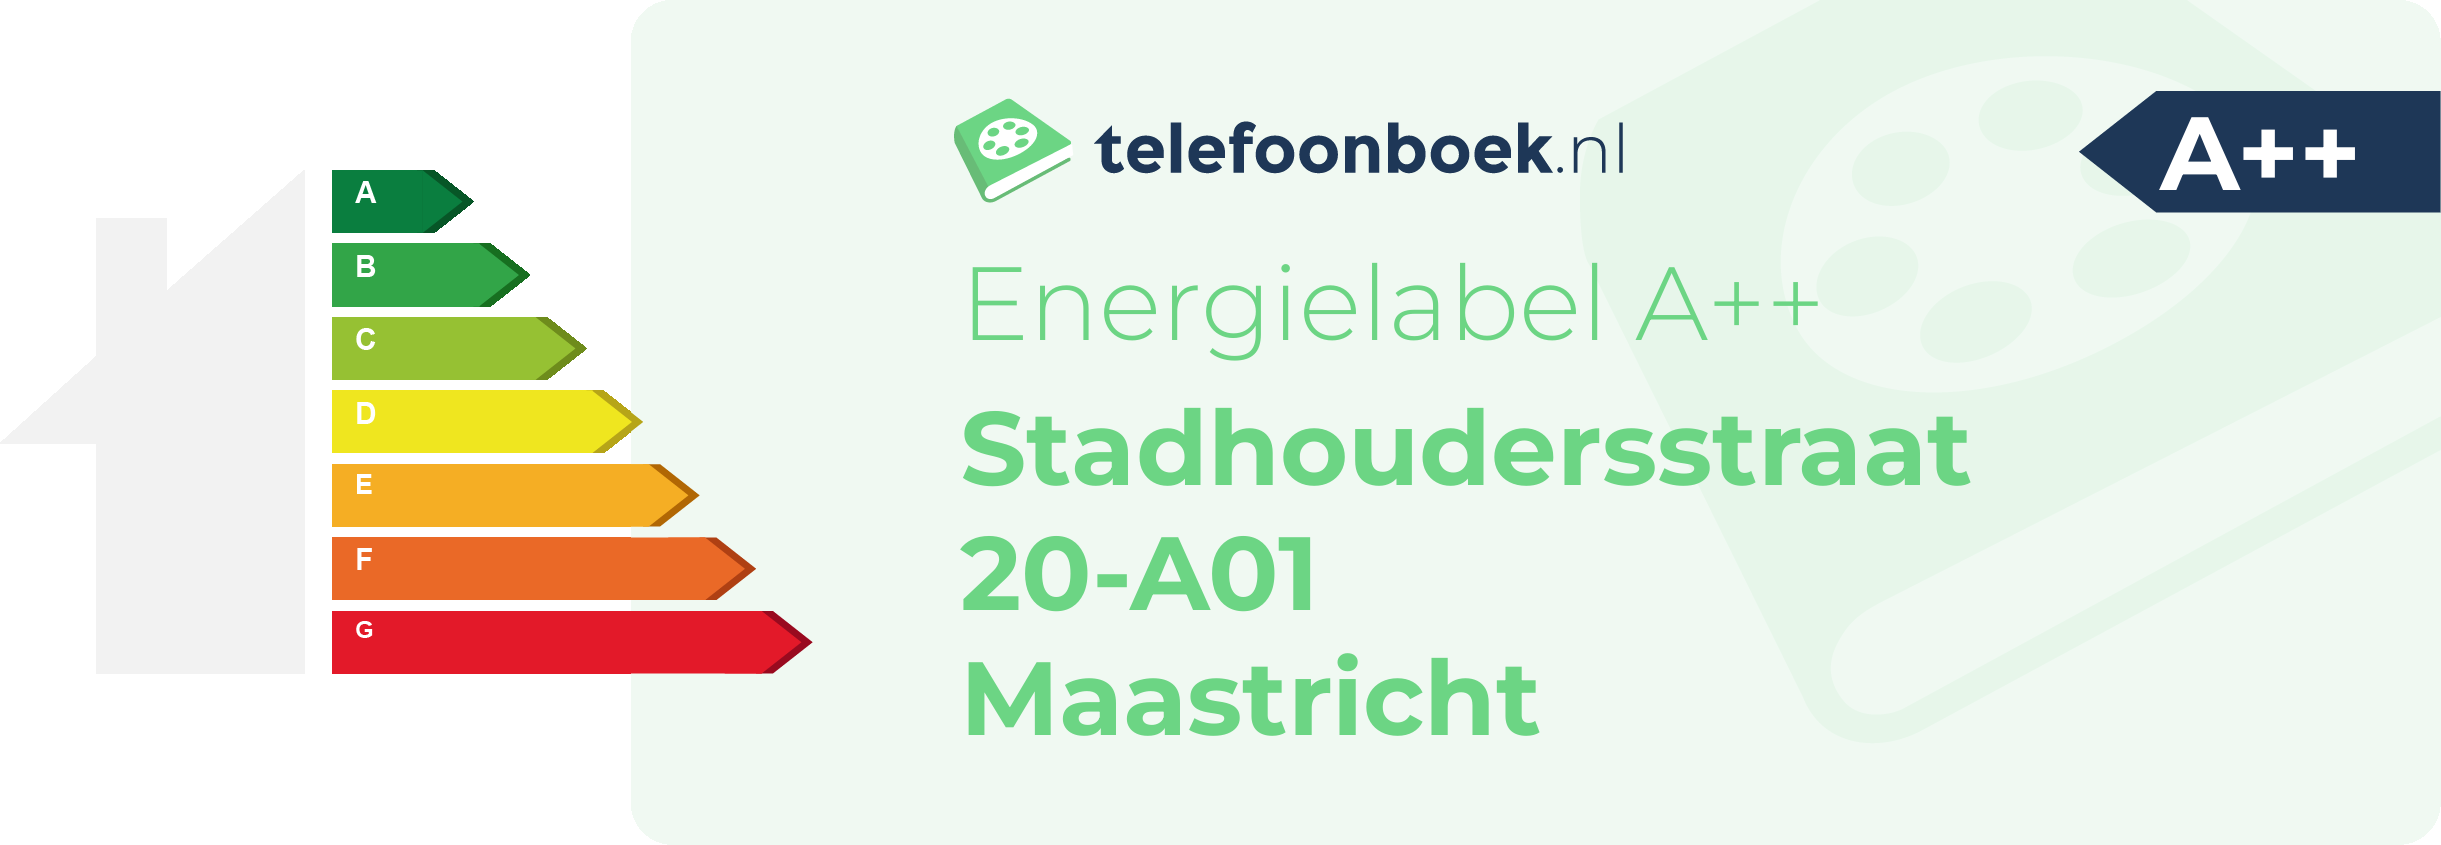 Energielabel Stadhoudersstraat 20-A01 Maastricht